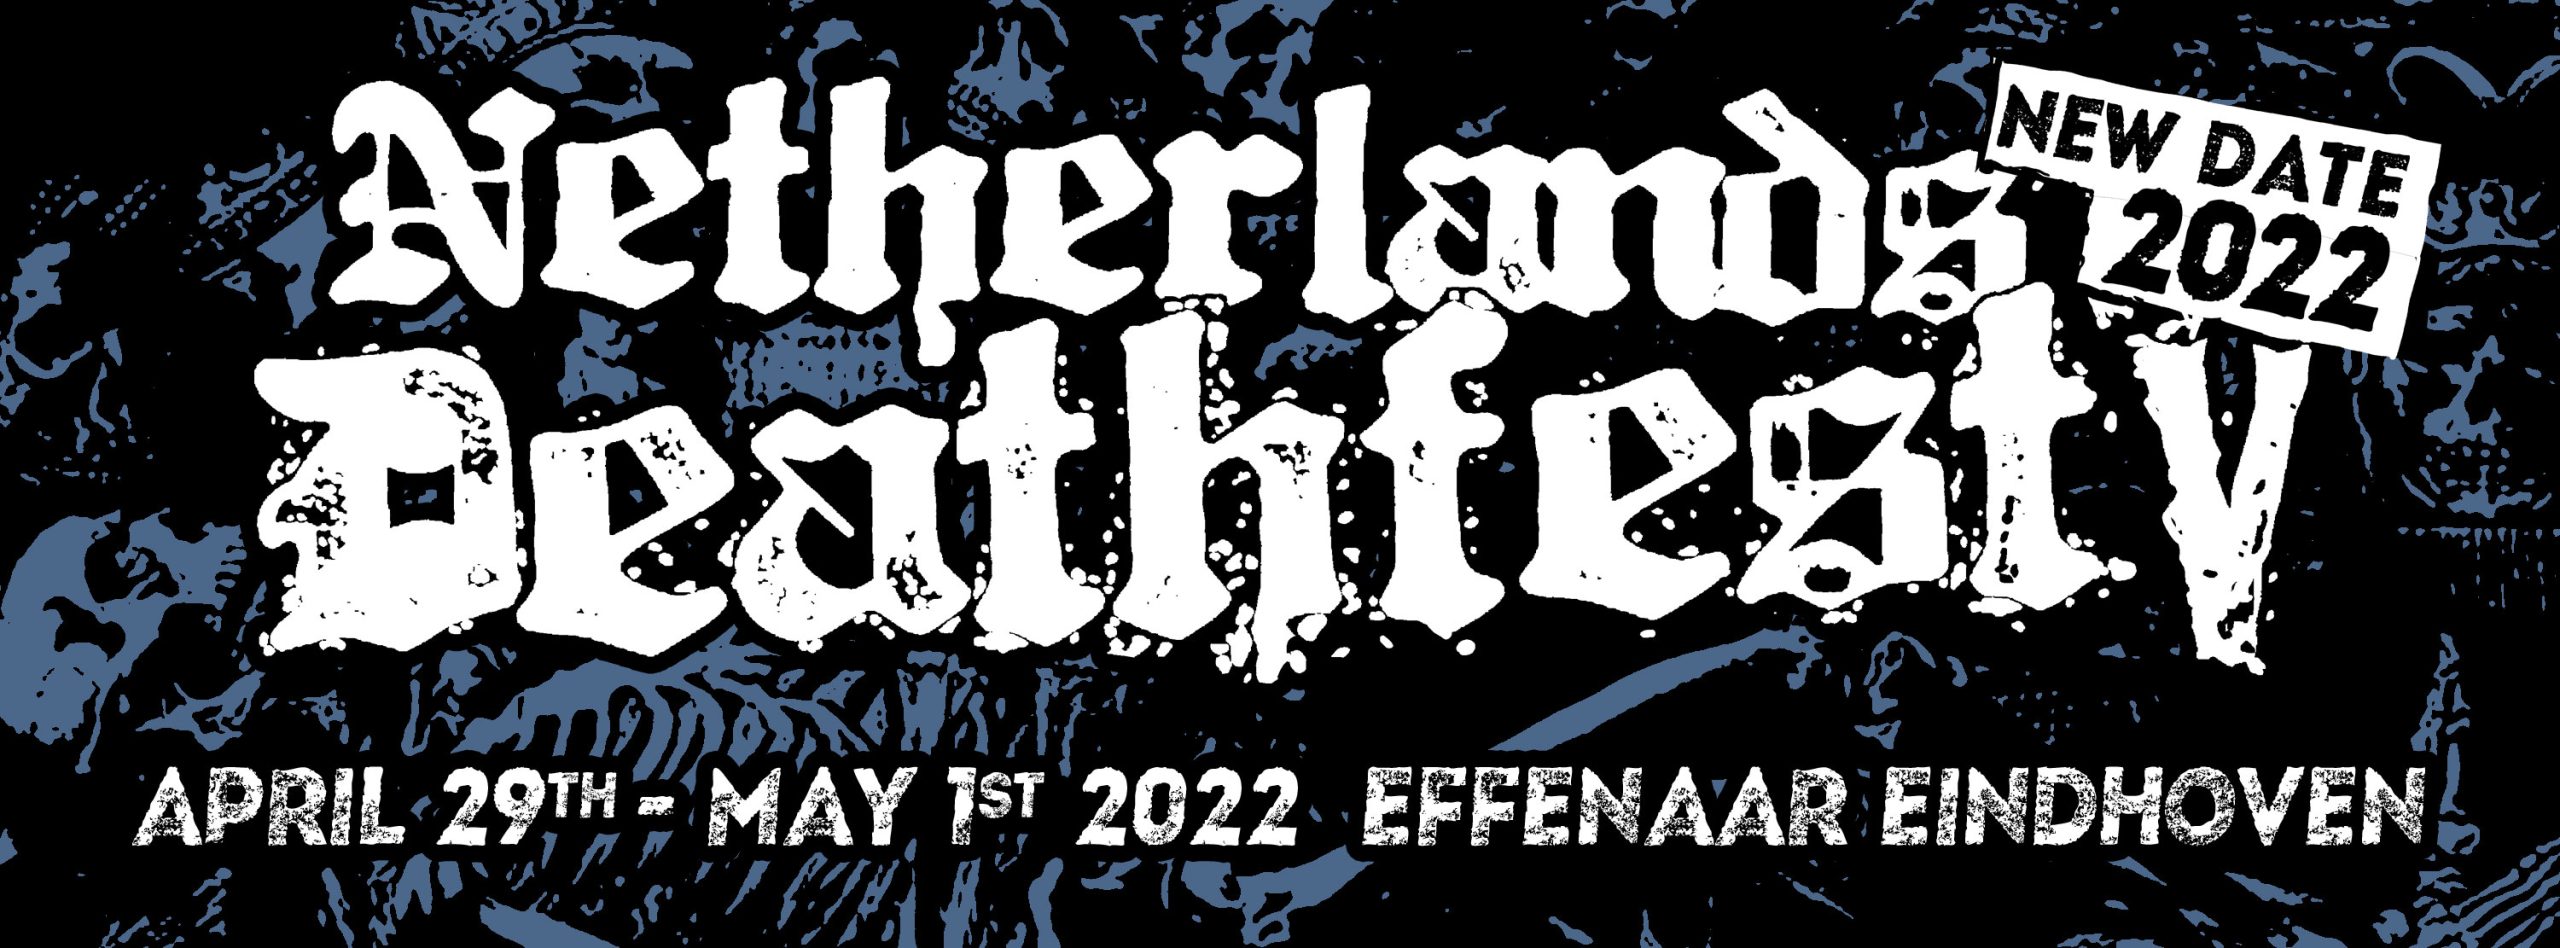 Netherlands Deathfest V 2022